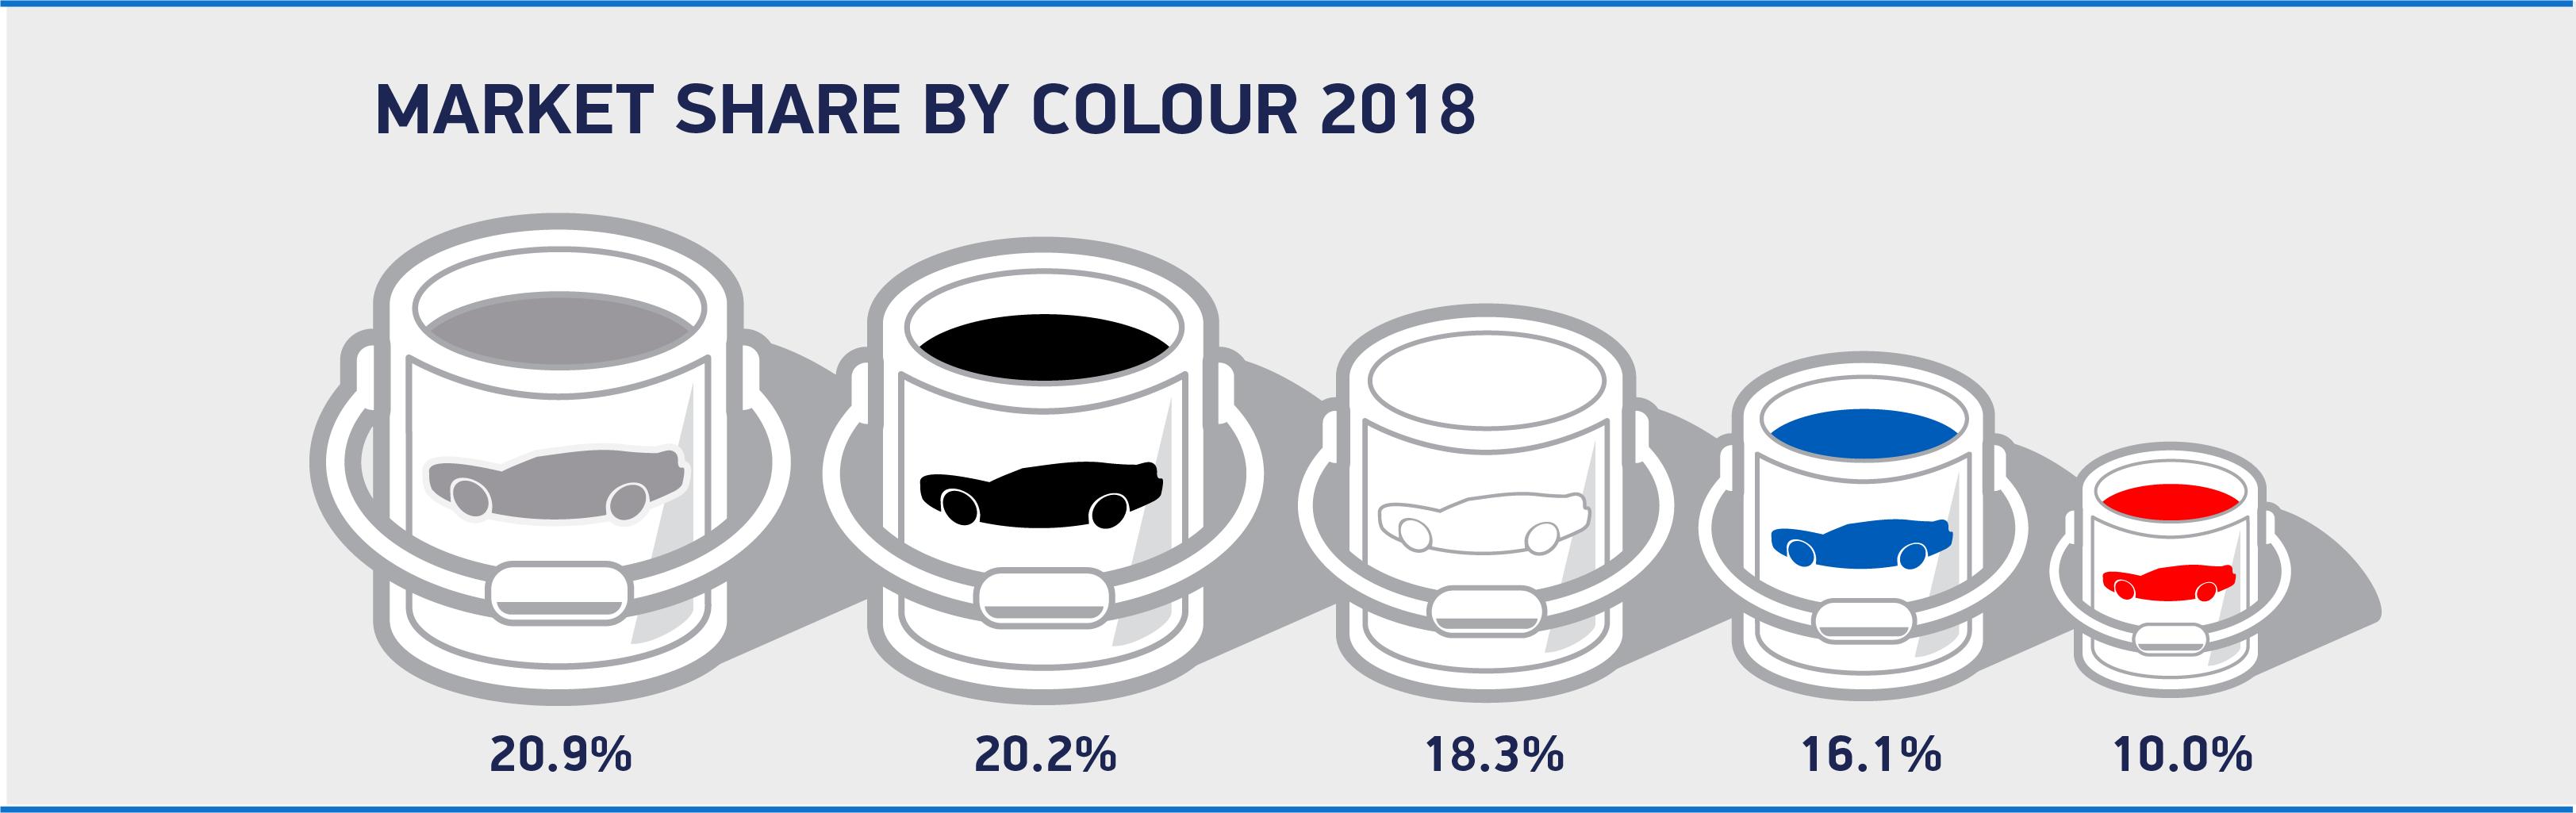 پر فروش ترین رنگ ماشین در سال 2018,اخبار خودرو,خبرهای خودرو,بازار خودرو